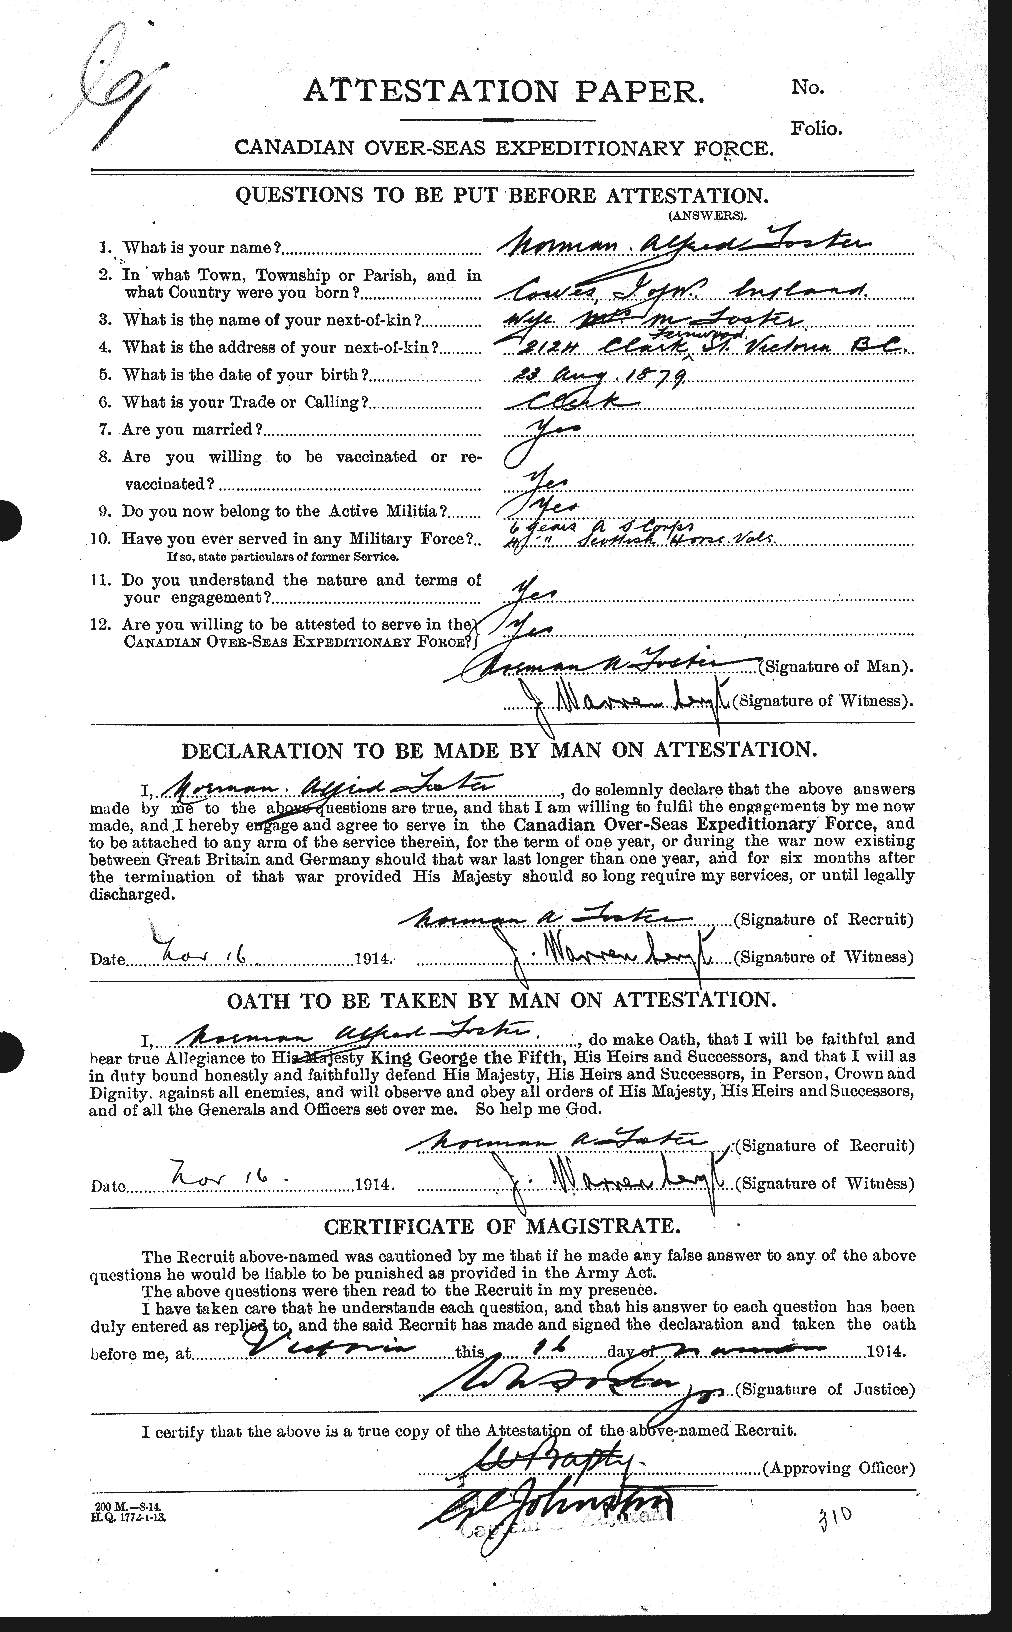 Dossiers du Personnel de la Première Guerre mondiale - CEC 333434a